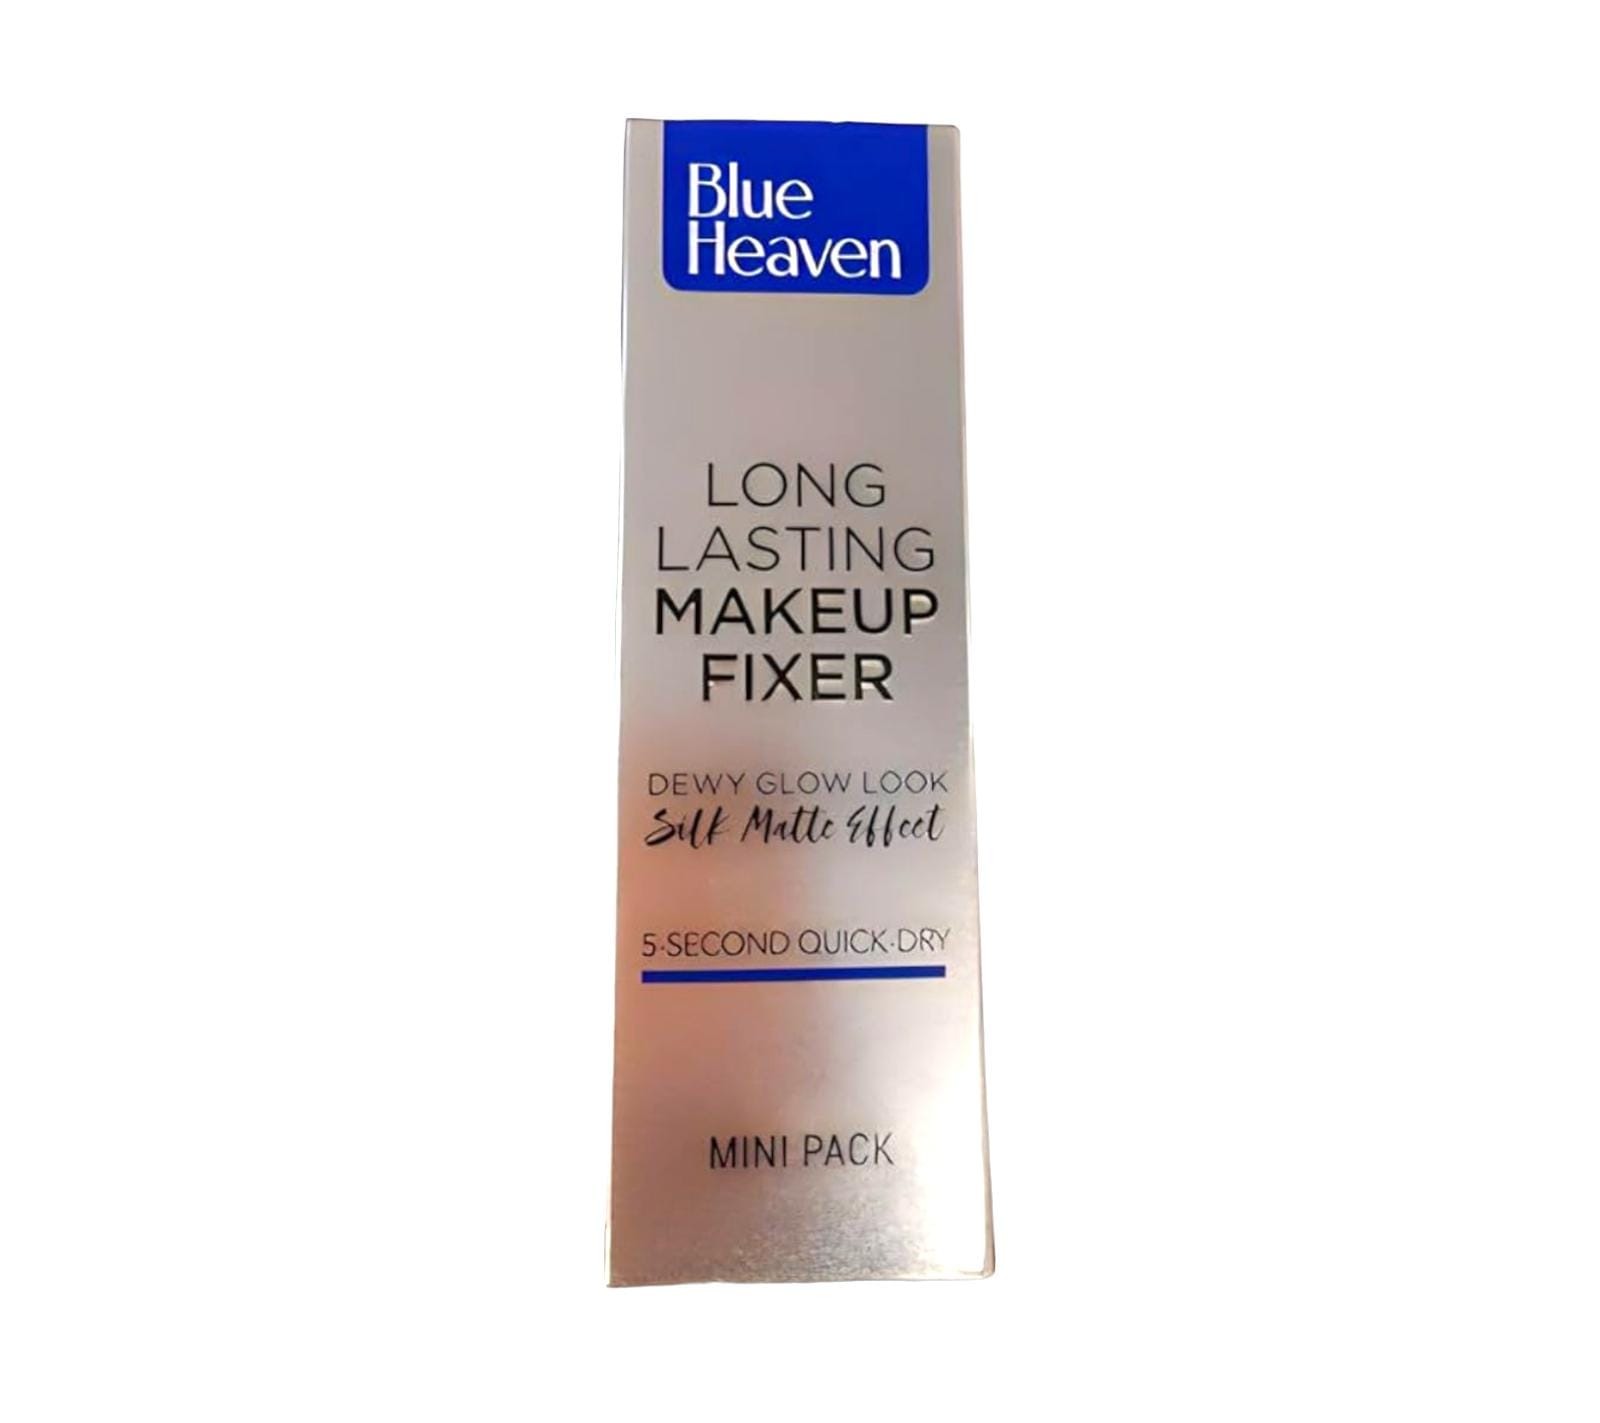 Blue Heaven long lasting makeup fixer 